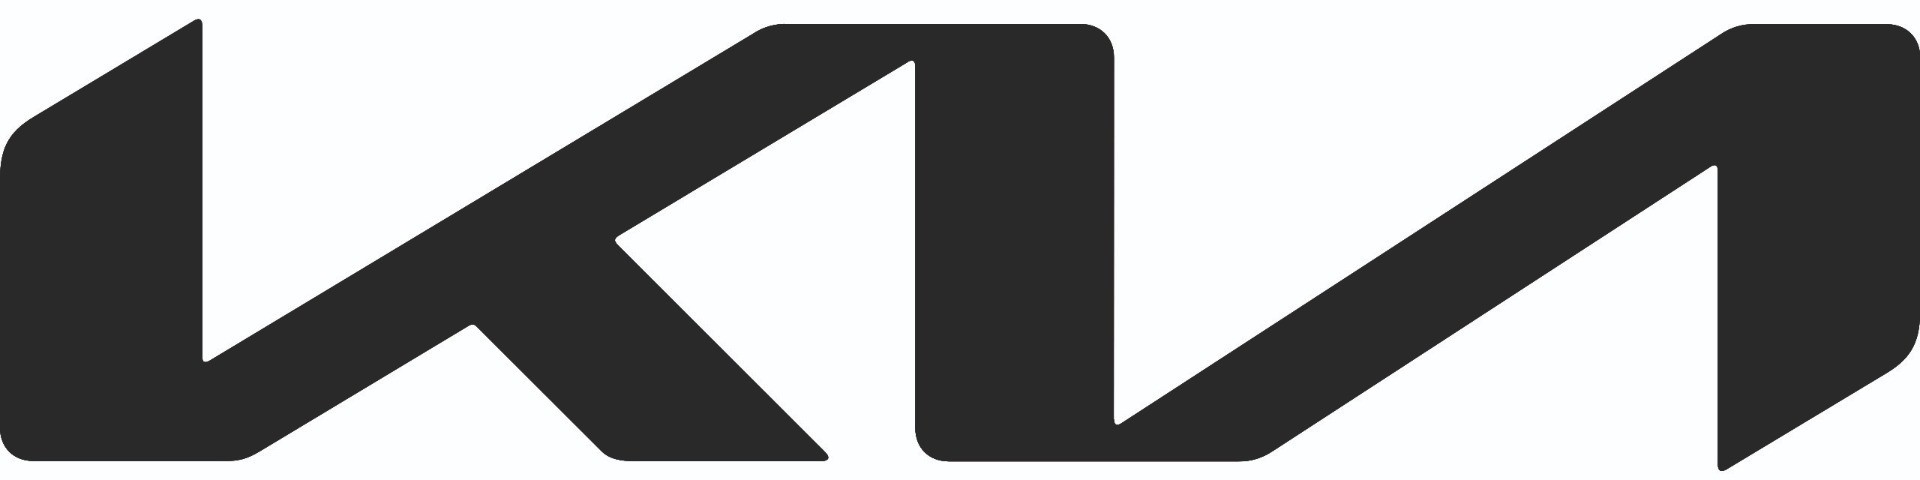 KIA_logo3.jpg